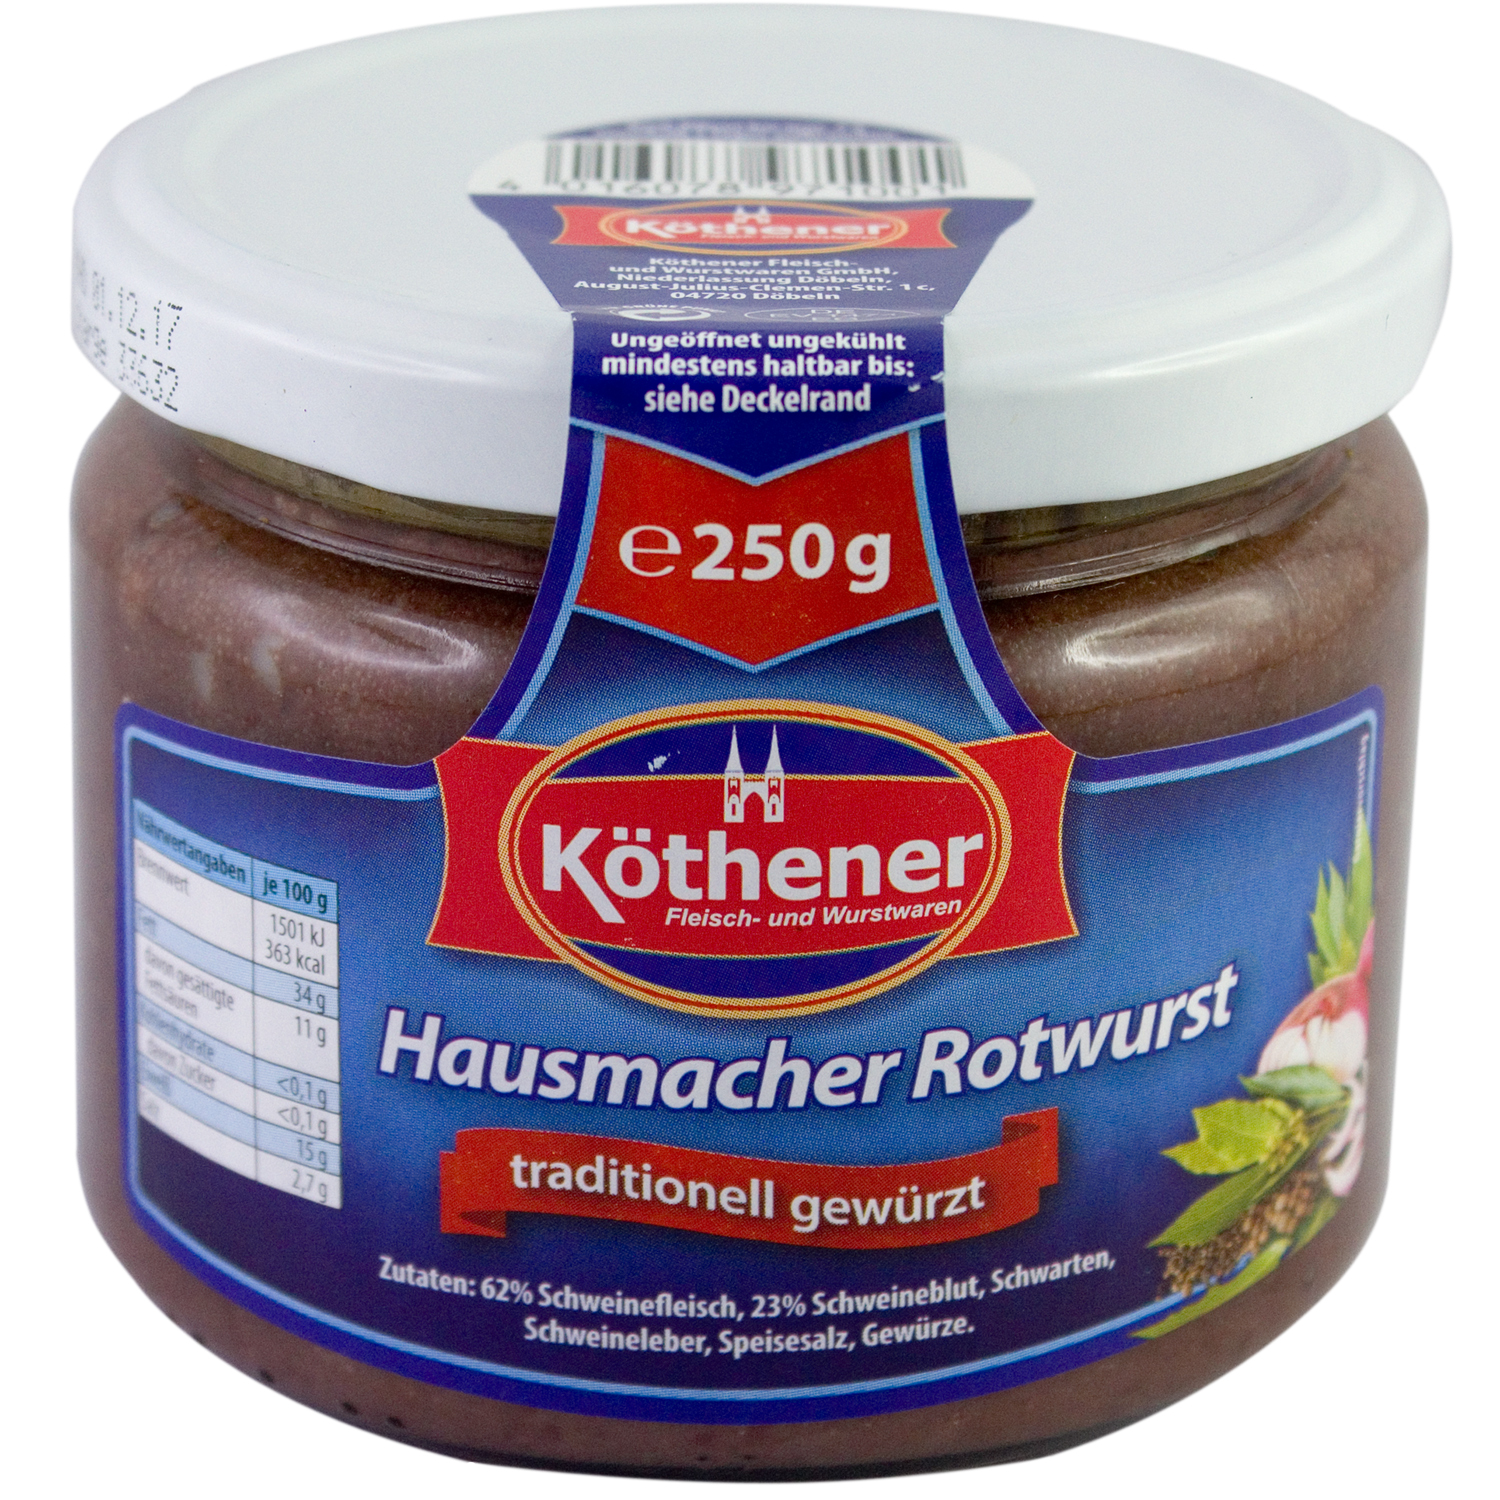 Ossikiste.de | Köthener Hausmacher Rotwurst 250g Glas | online kaufen